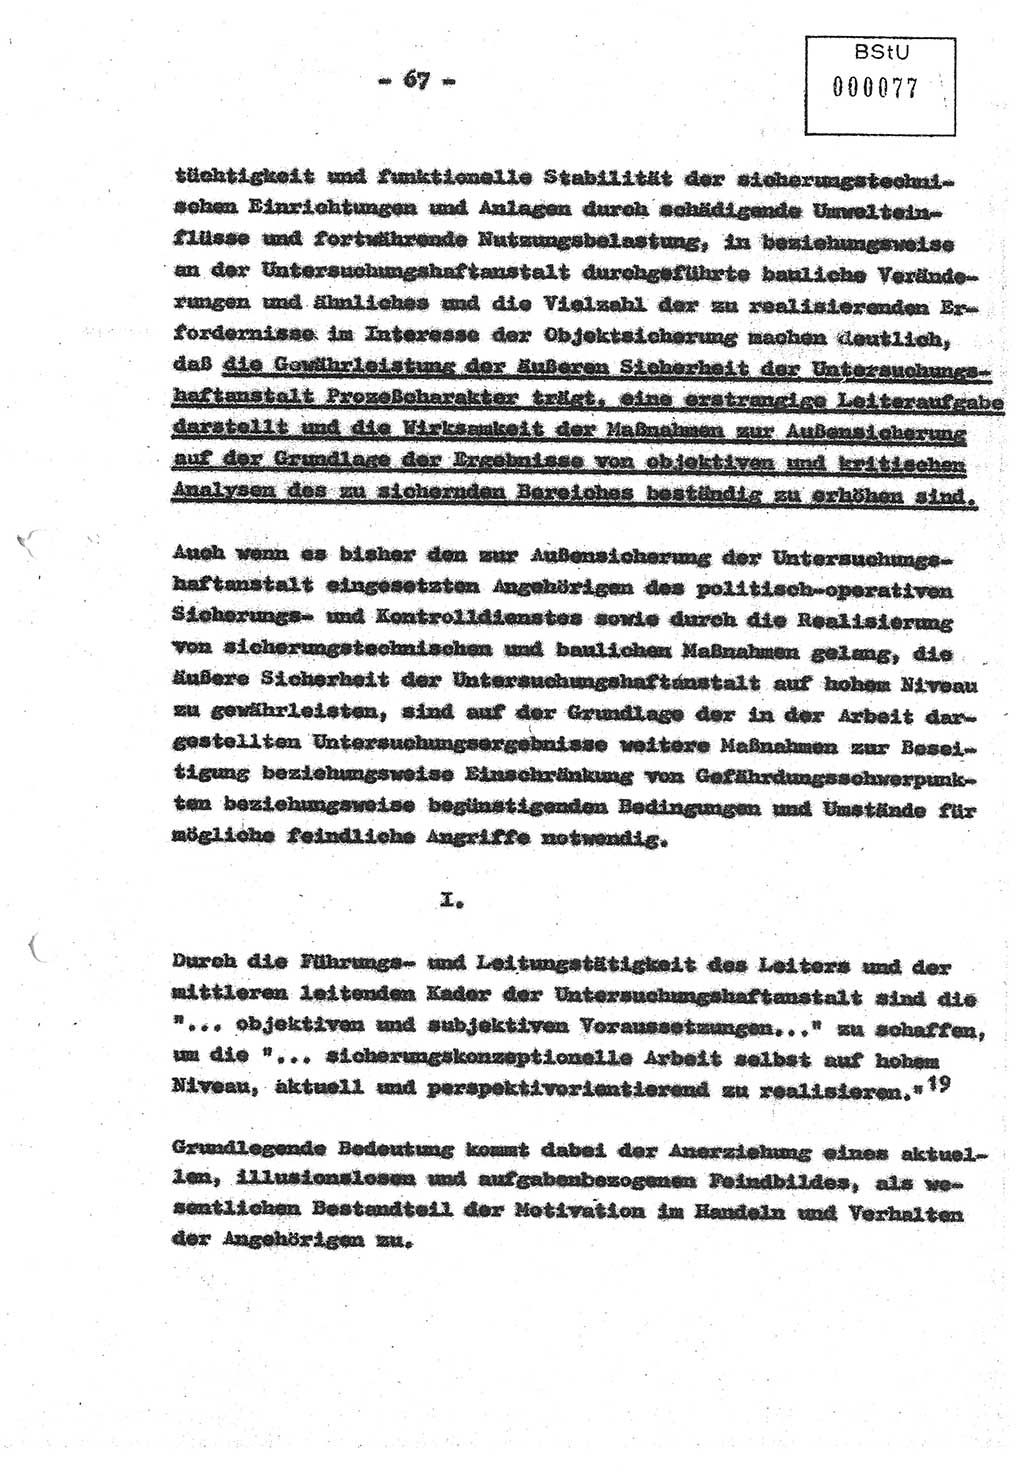 Diplomarbeit (Entwurf) Oberleutnant Peter Parke (Abt. ⅩⅣ), Ministerium für Staatssicherheit (MfS) [Deutsche Demokratische Republik (DDR)], Juristische Hochschule (JHS), Geheime Verschlußsache (GVS) o001-98/86, Potsdam 1986, Seite 77 (Dipl.-Arb. MfS DDR JHS GVS o001-98/86 1986, S. 77)